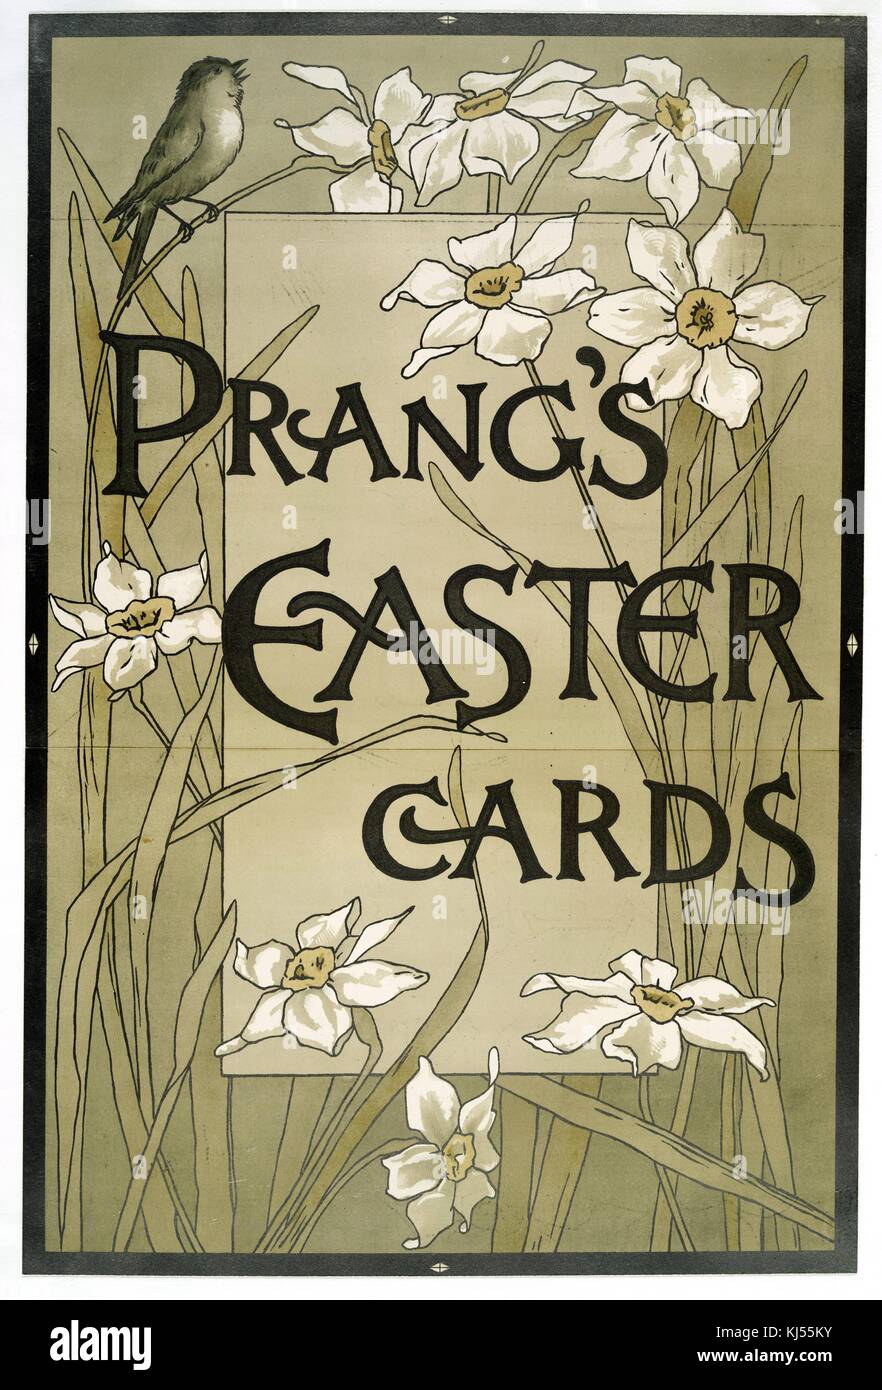 Affiche Chromolithograph avec les mots « cartes de Pâques de Prang », représentant des fleurs blanches et un oiseau qui gazouillis en haut, 1900. De la bibliothèque publique de New York. Banque D'Images